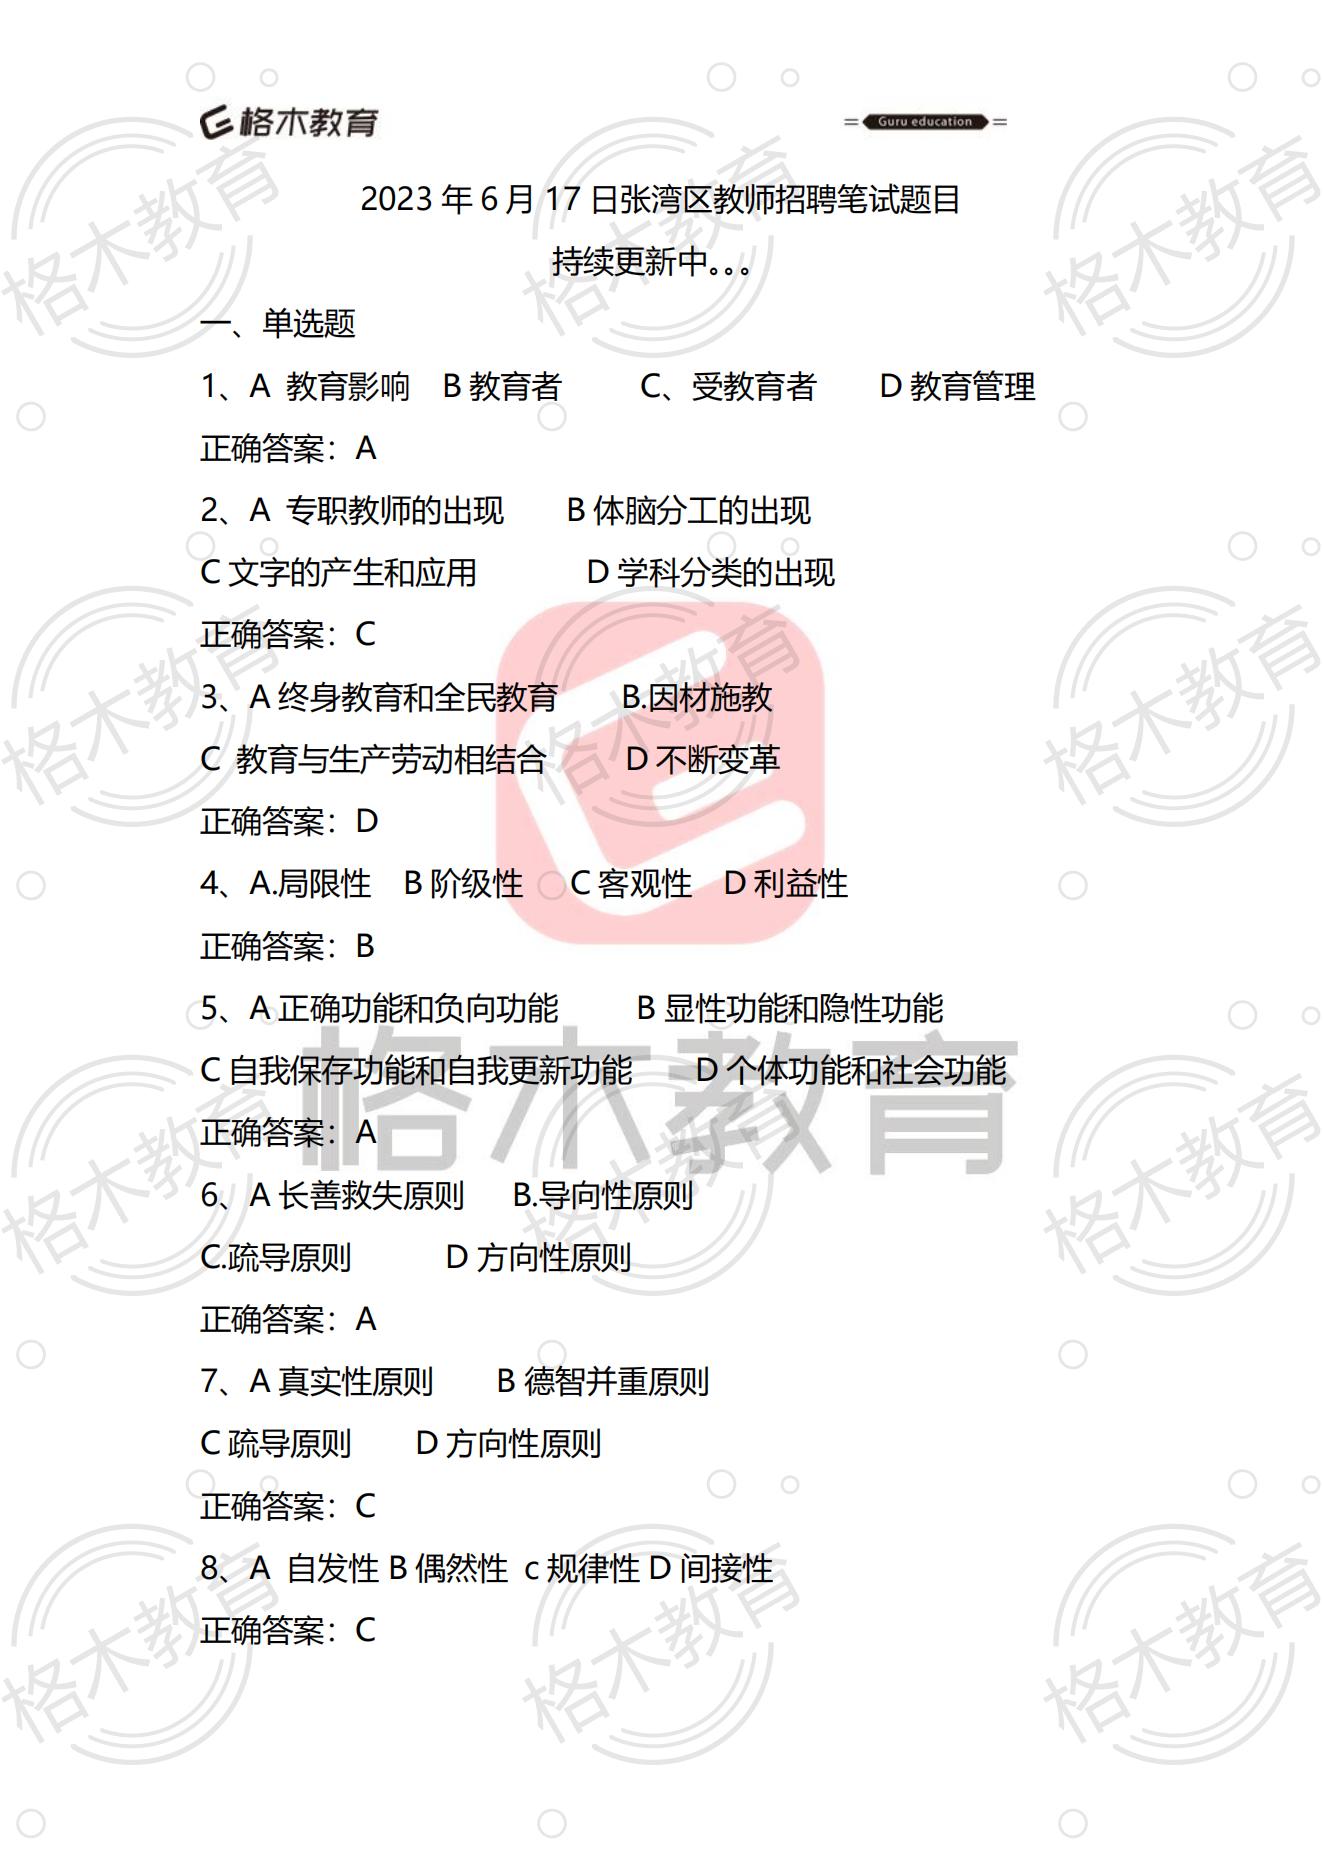 【格木】2023年6月17日十堰市张湾区教师招聘笔试估分